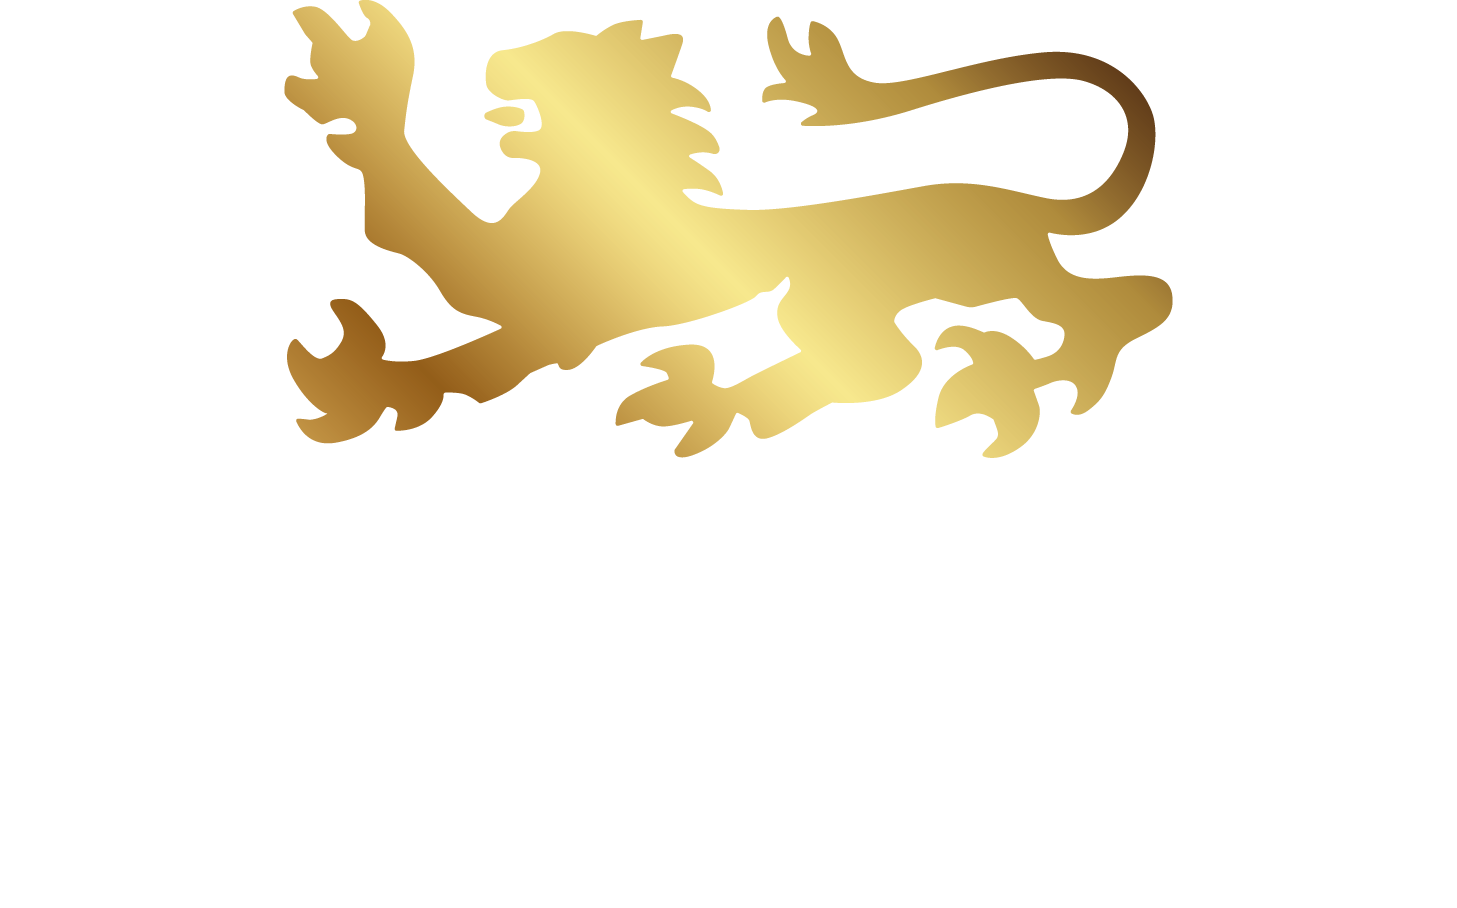 Fürstlich - Café Bistro Catering in Klagenfurt - Logo mit goldenem Löwen und Bildunterschrift